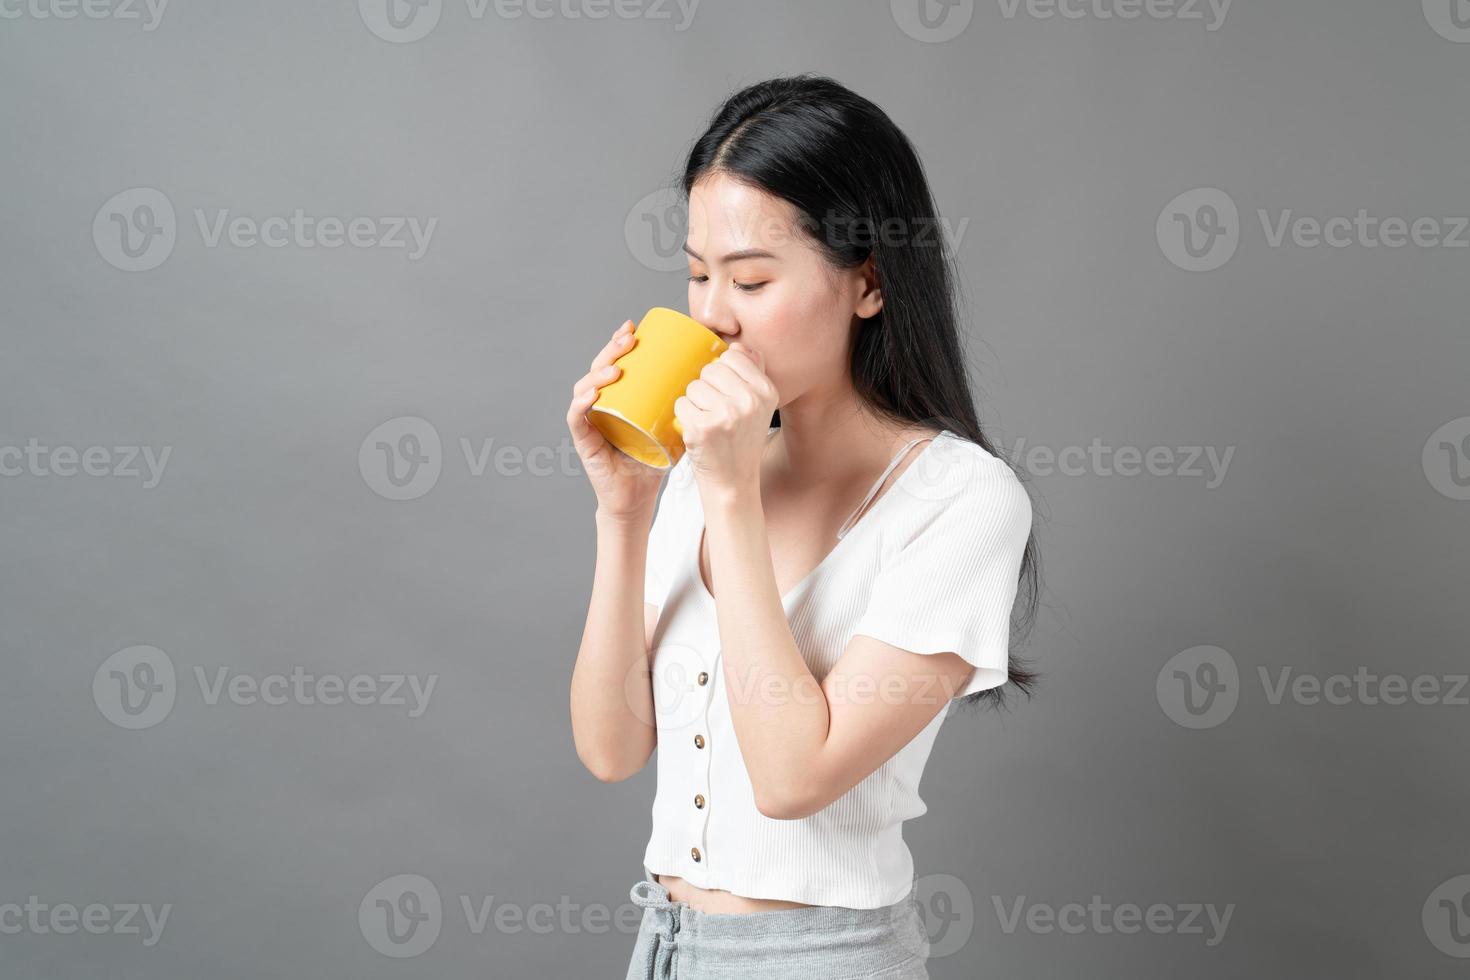 jeune femme asiatique avec un visage heureux et une main tenant une tasse de café photo